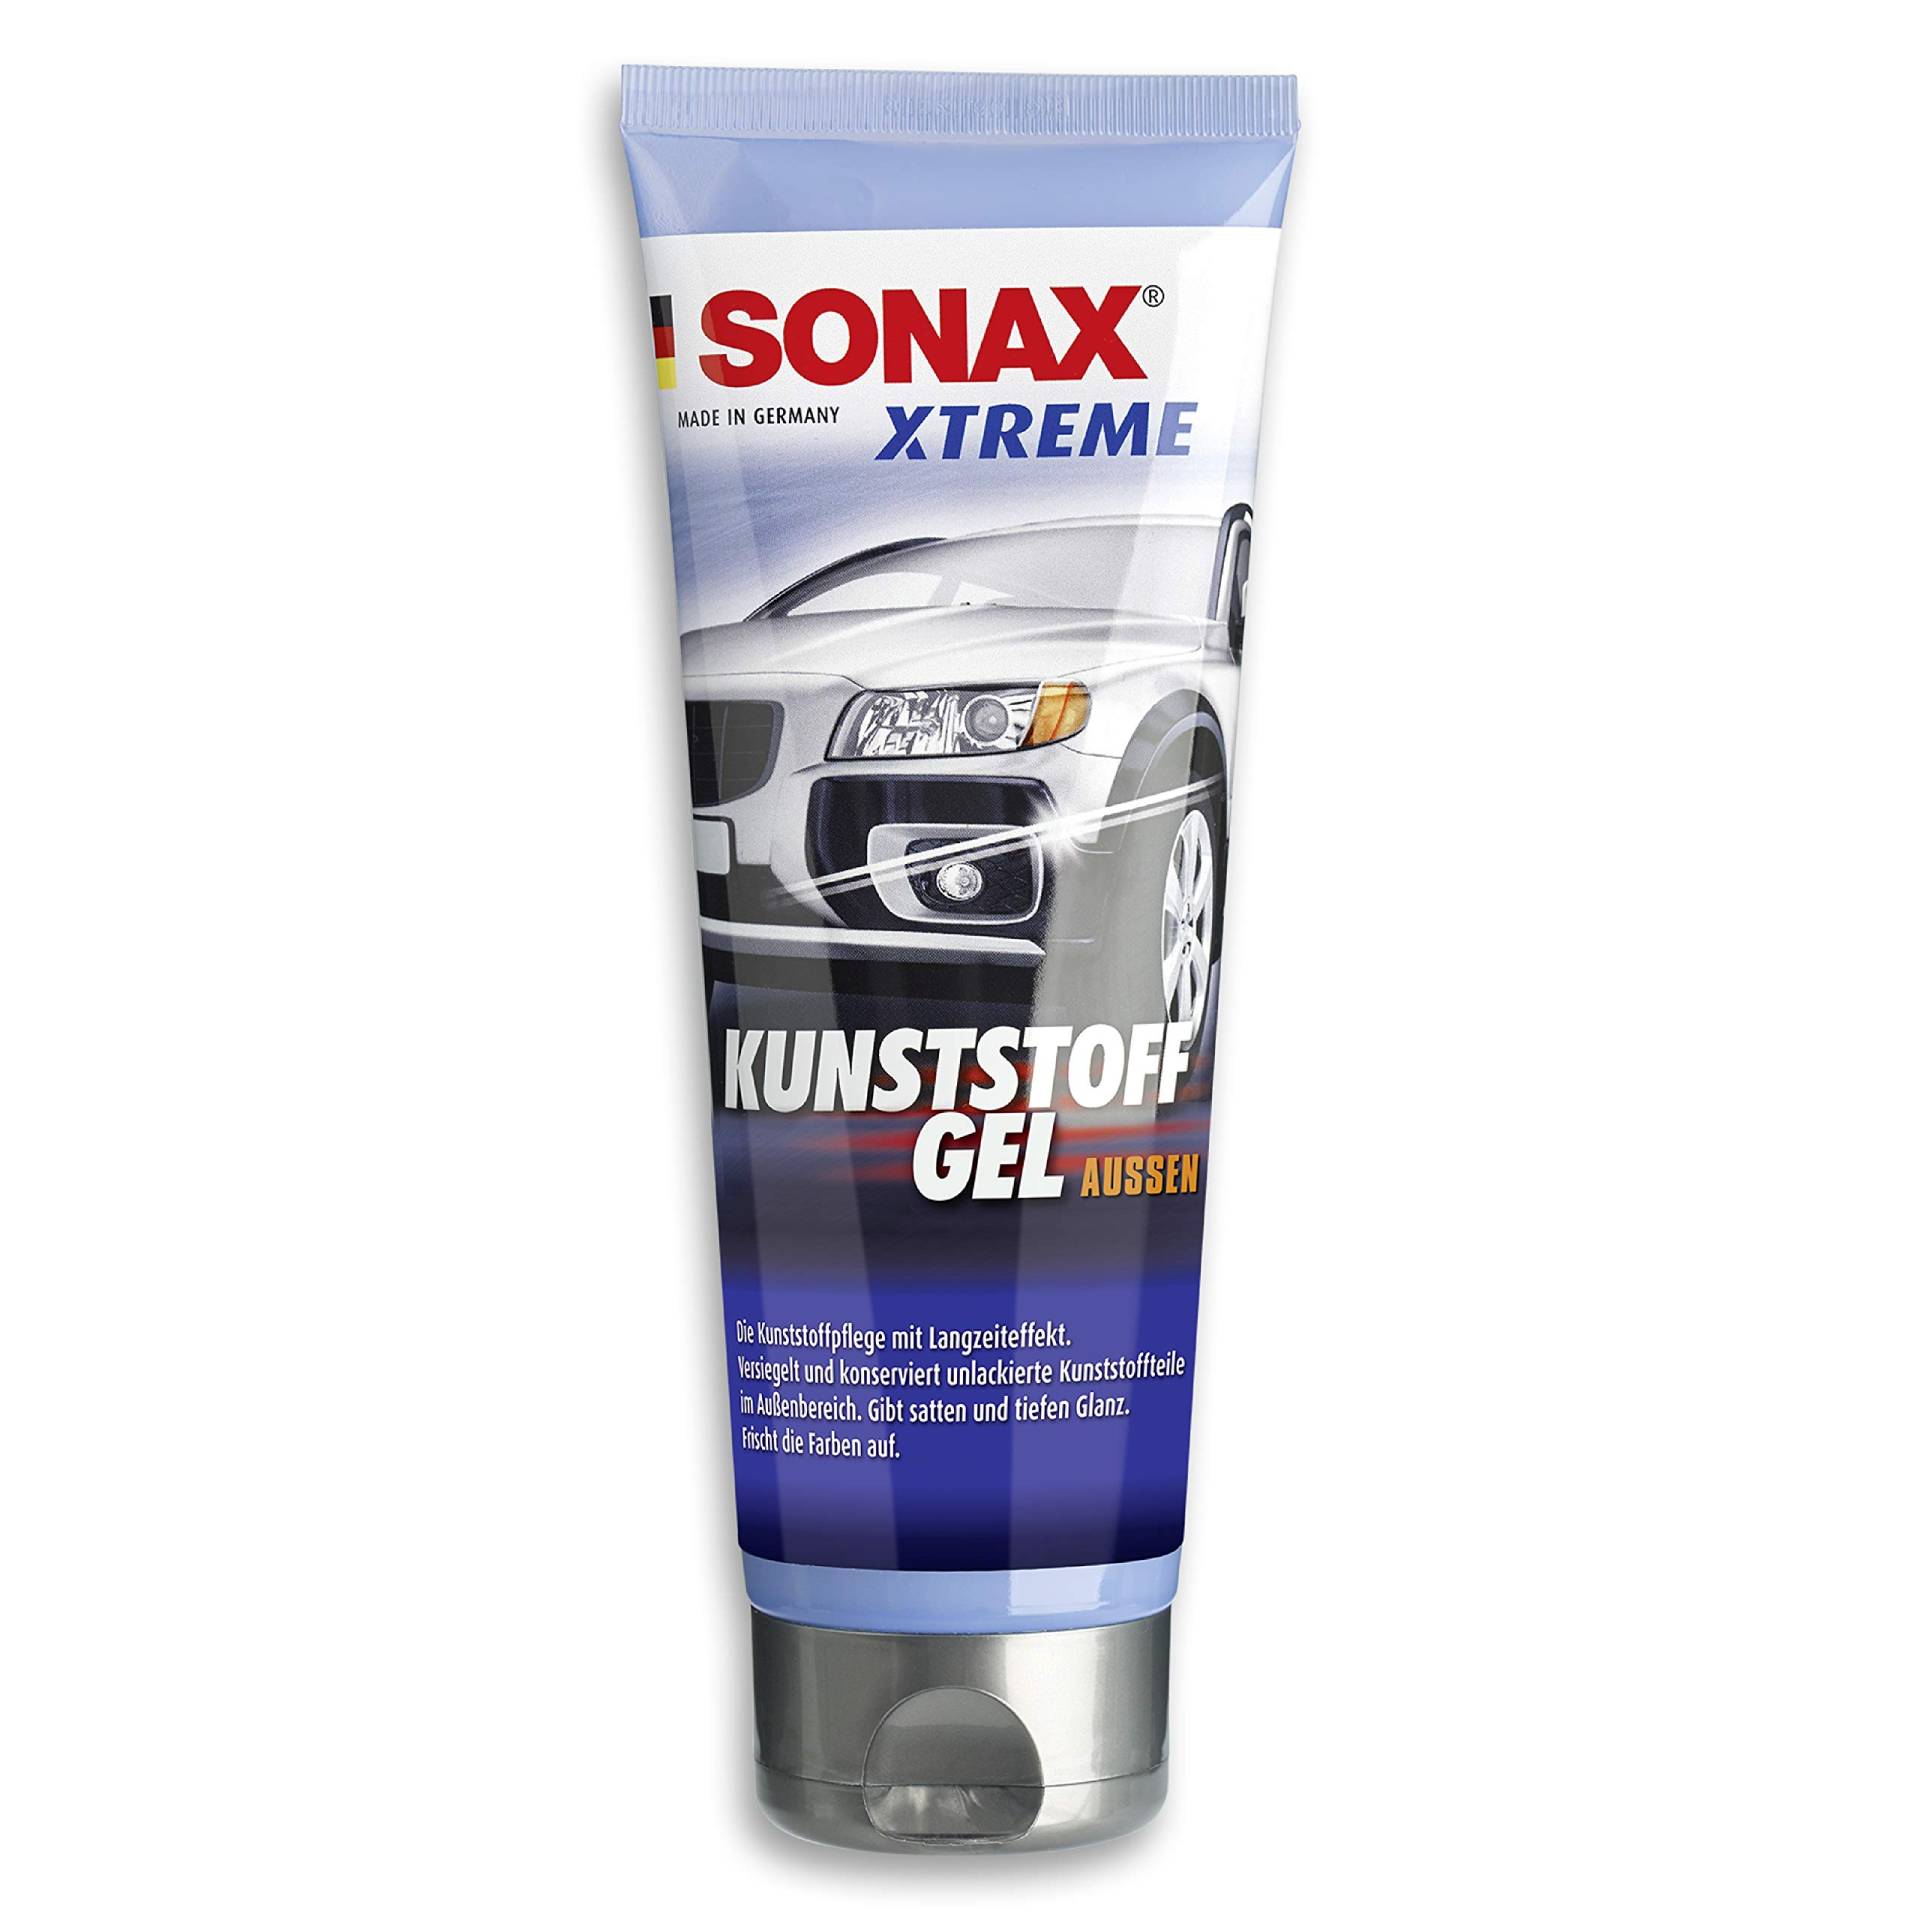 SONAX XTREME KunststoffGel Außen NanoPro (250 ml) Kunststoffreiniger pflegt unlackierte Kunststoffteile im Außenbereich von Fahrzeugen, Art-Nr. 02101410 von SONAX